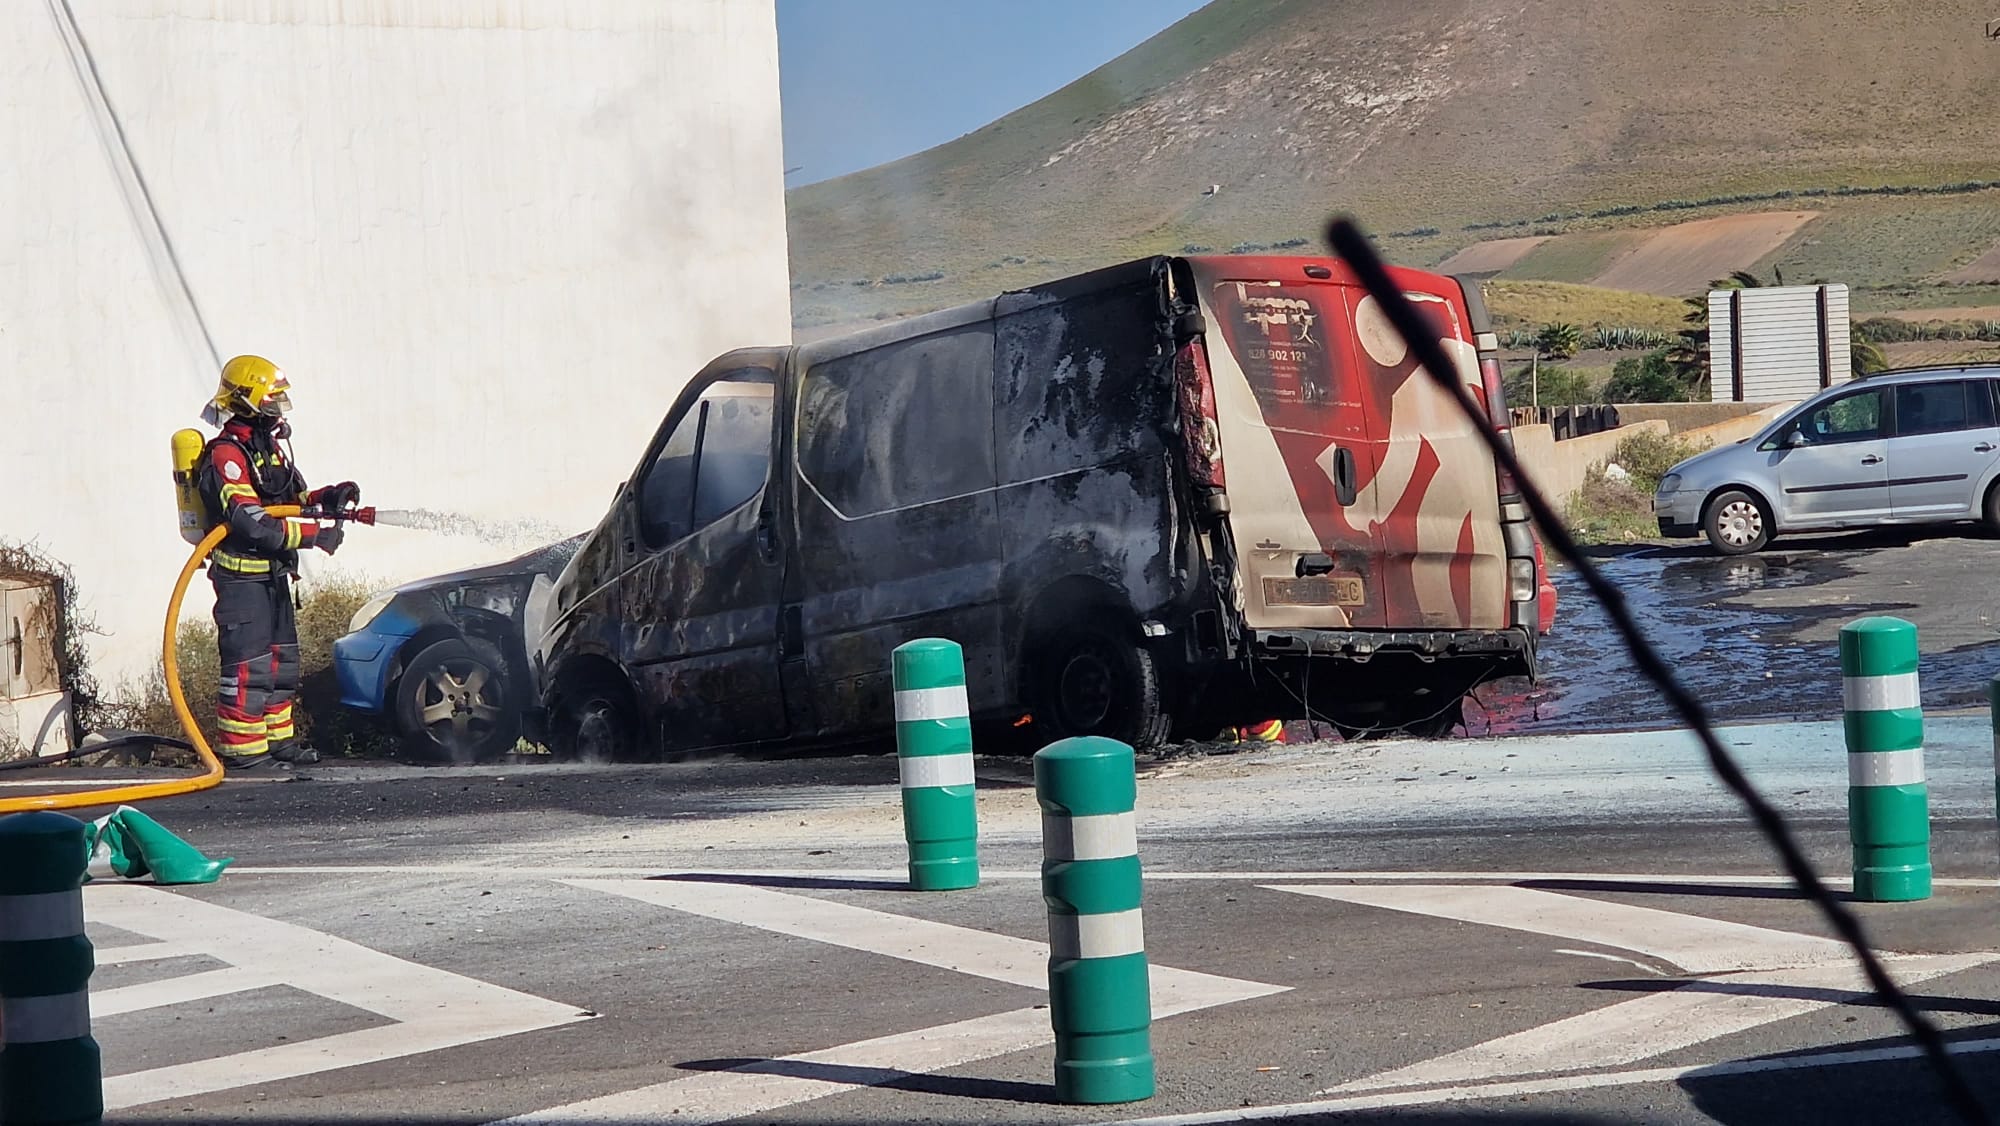 Bomberos extinguiendo el fuego de dos vehículos en San Bartolomé (Fotos: Dani C.)